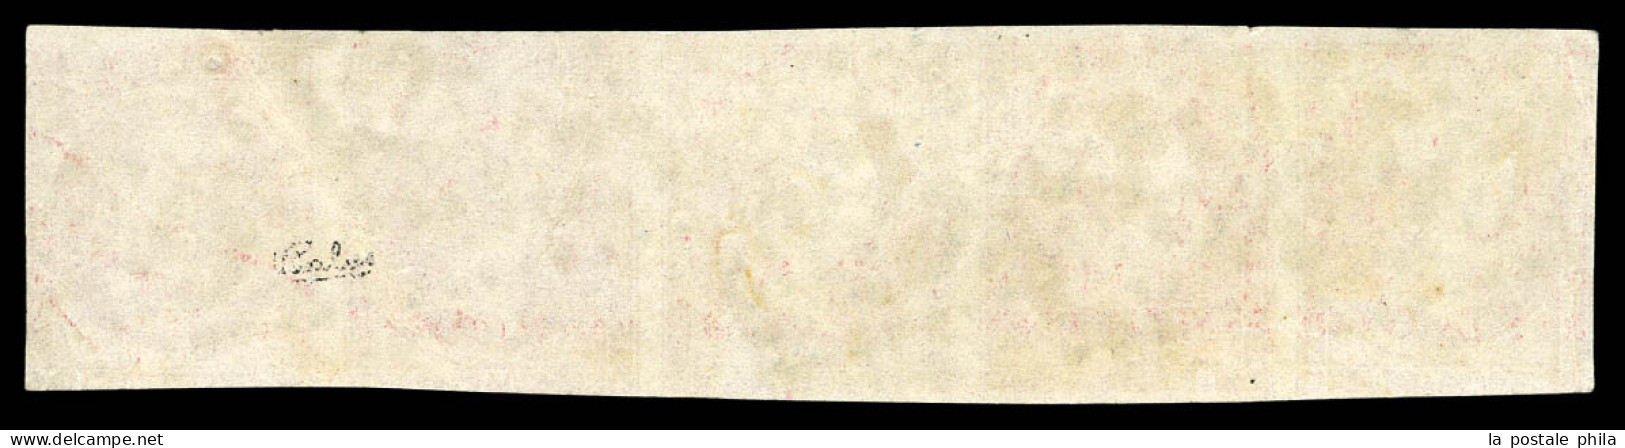 O N°17Bc, 80c Rose, Tête-bêche Tenant à Normaux En Bande De 5 Oblitération Losange GC 3219 De Rouen (Seine-Maritime), Qu - 1849-1876: Klassik